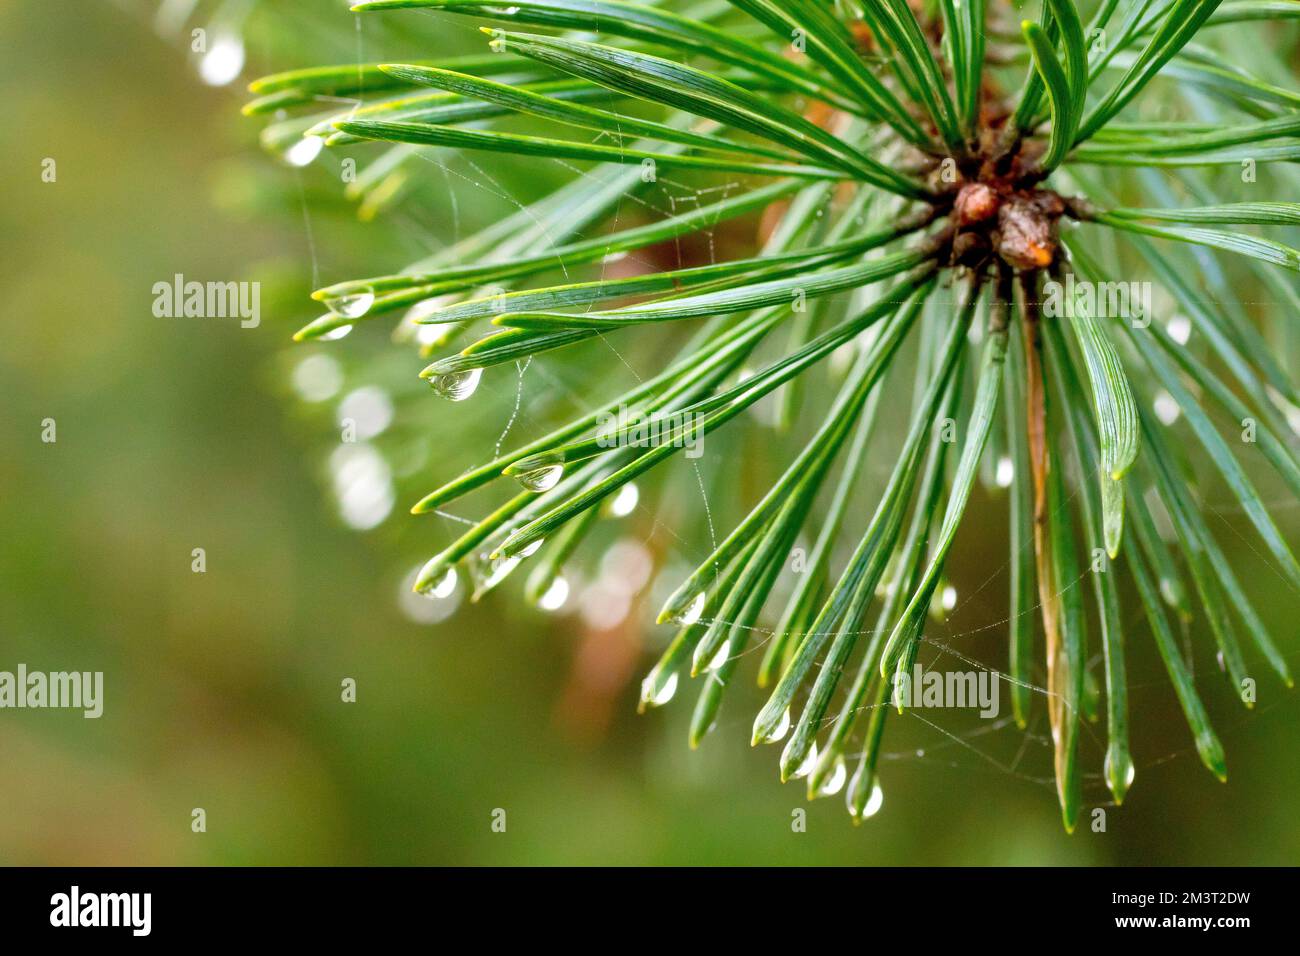 PIN d'Écosse (pinus sylvestris), gros plan montrant les aiguilles vertes de l'arbre un jour brumeux avec des gouttelettes d'eau se formant aux extrémités. Banque D'Images